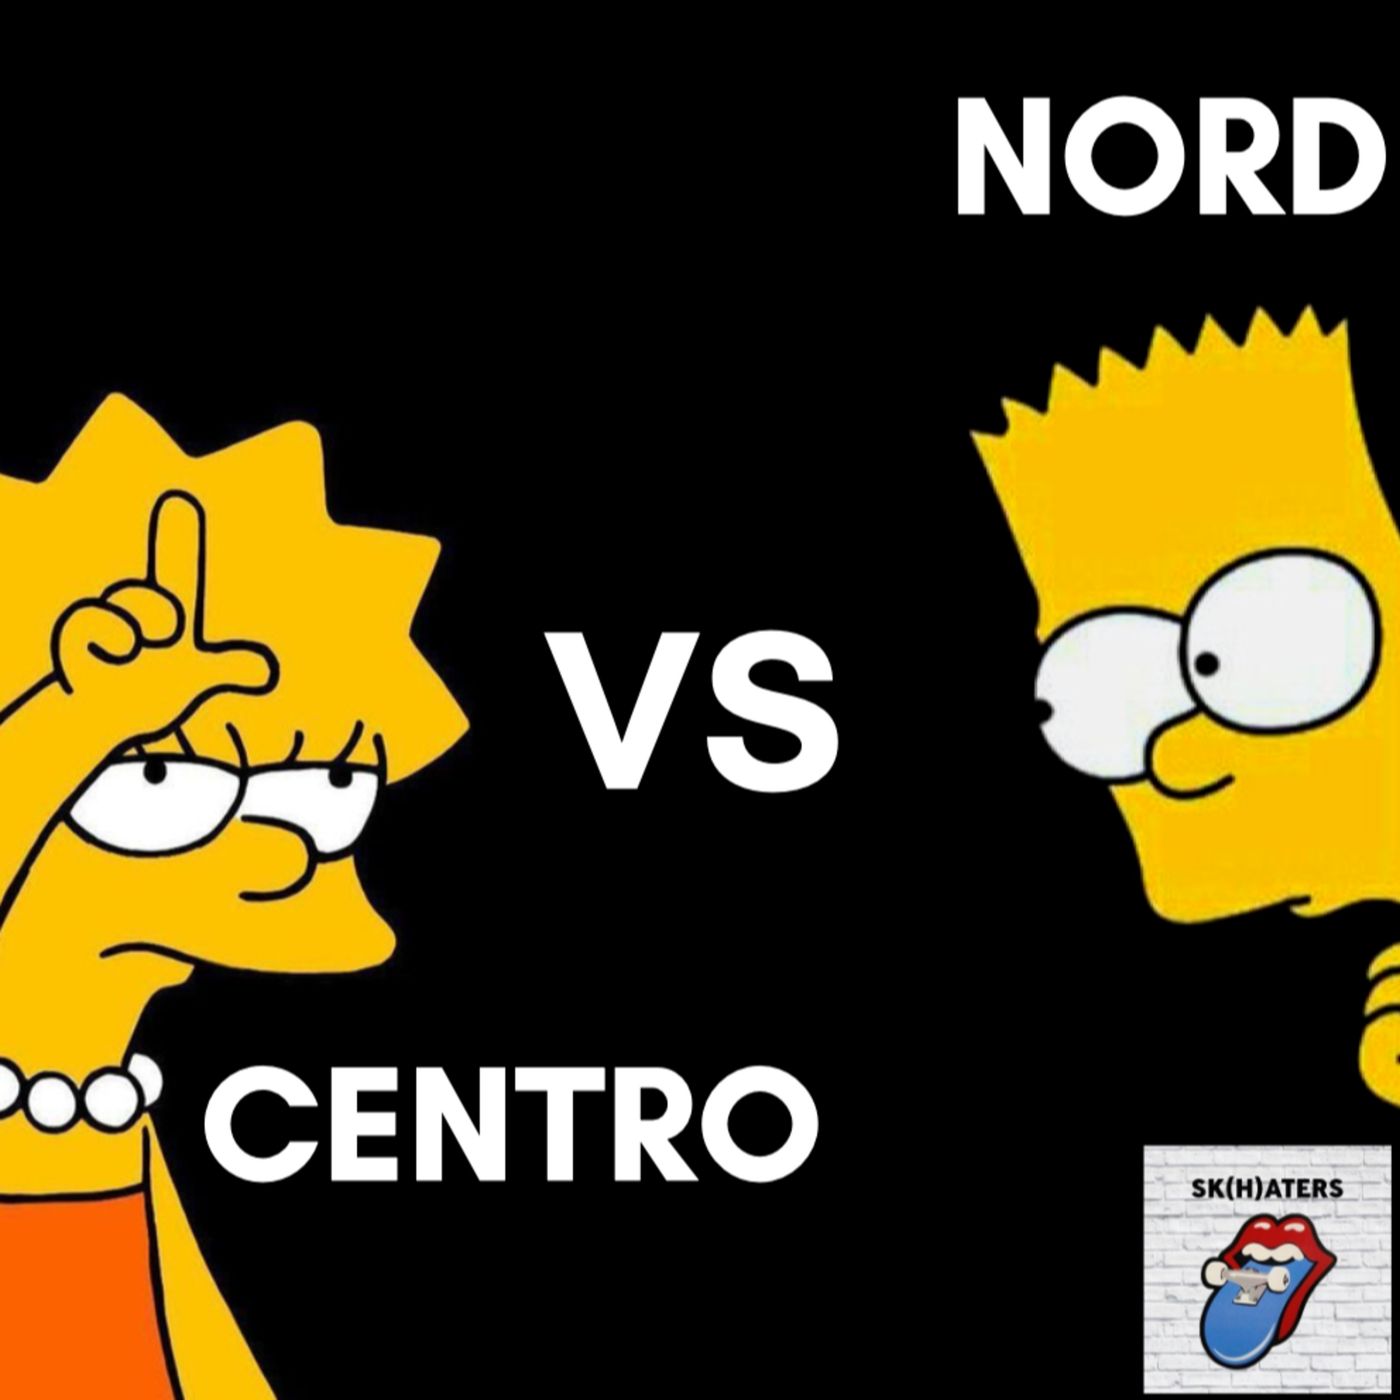 5. NORD vs CENTRO